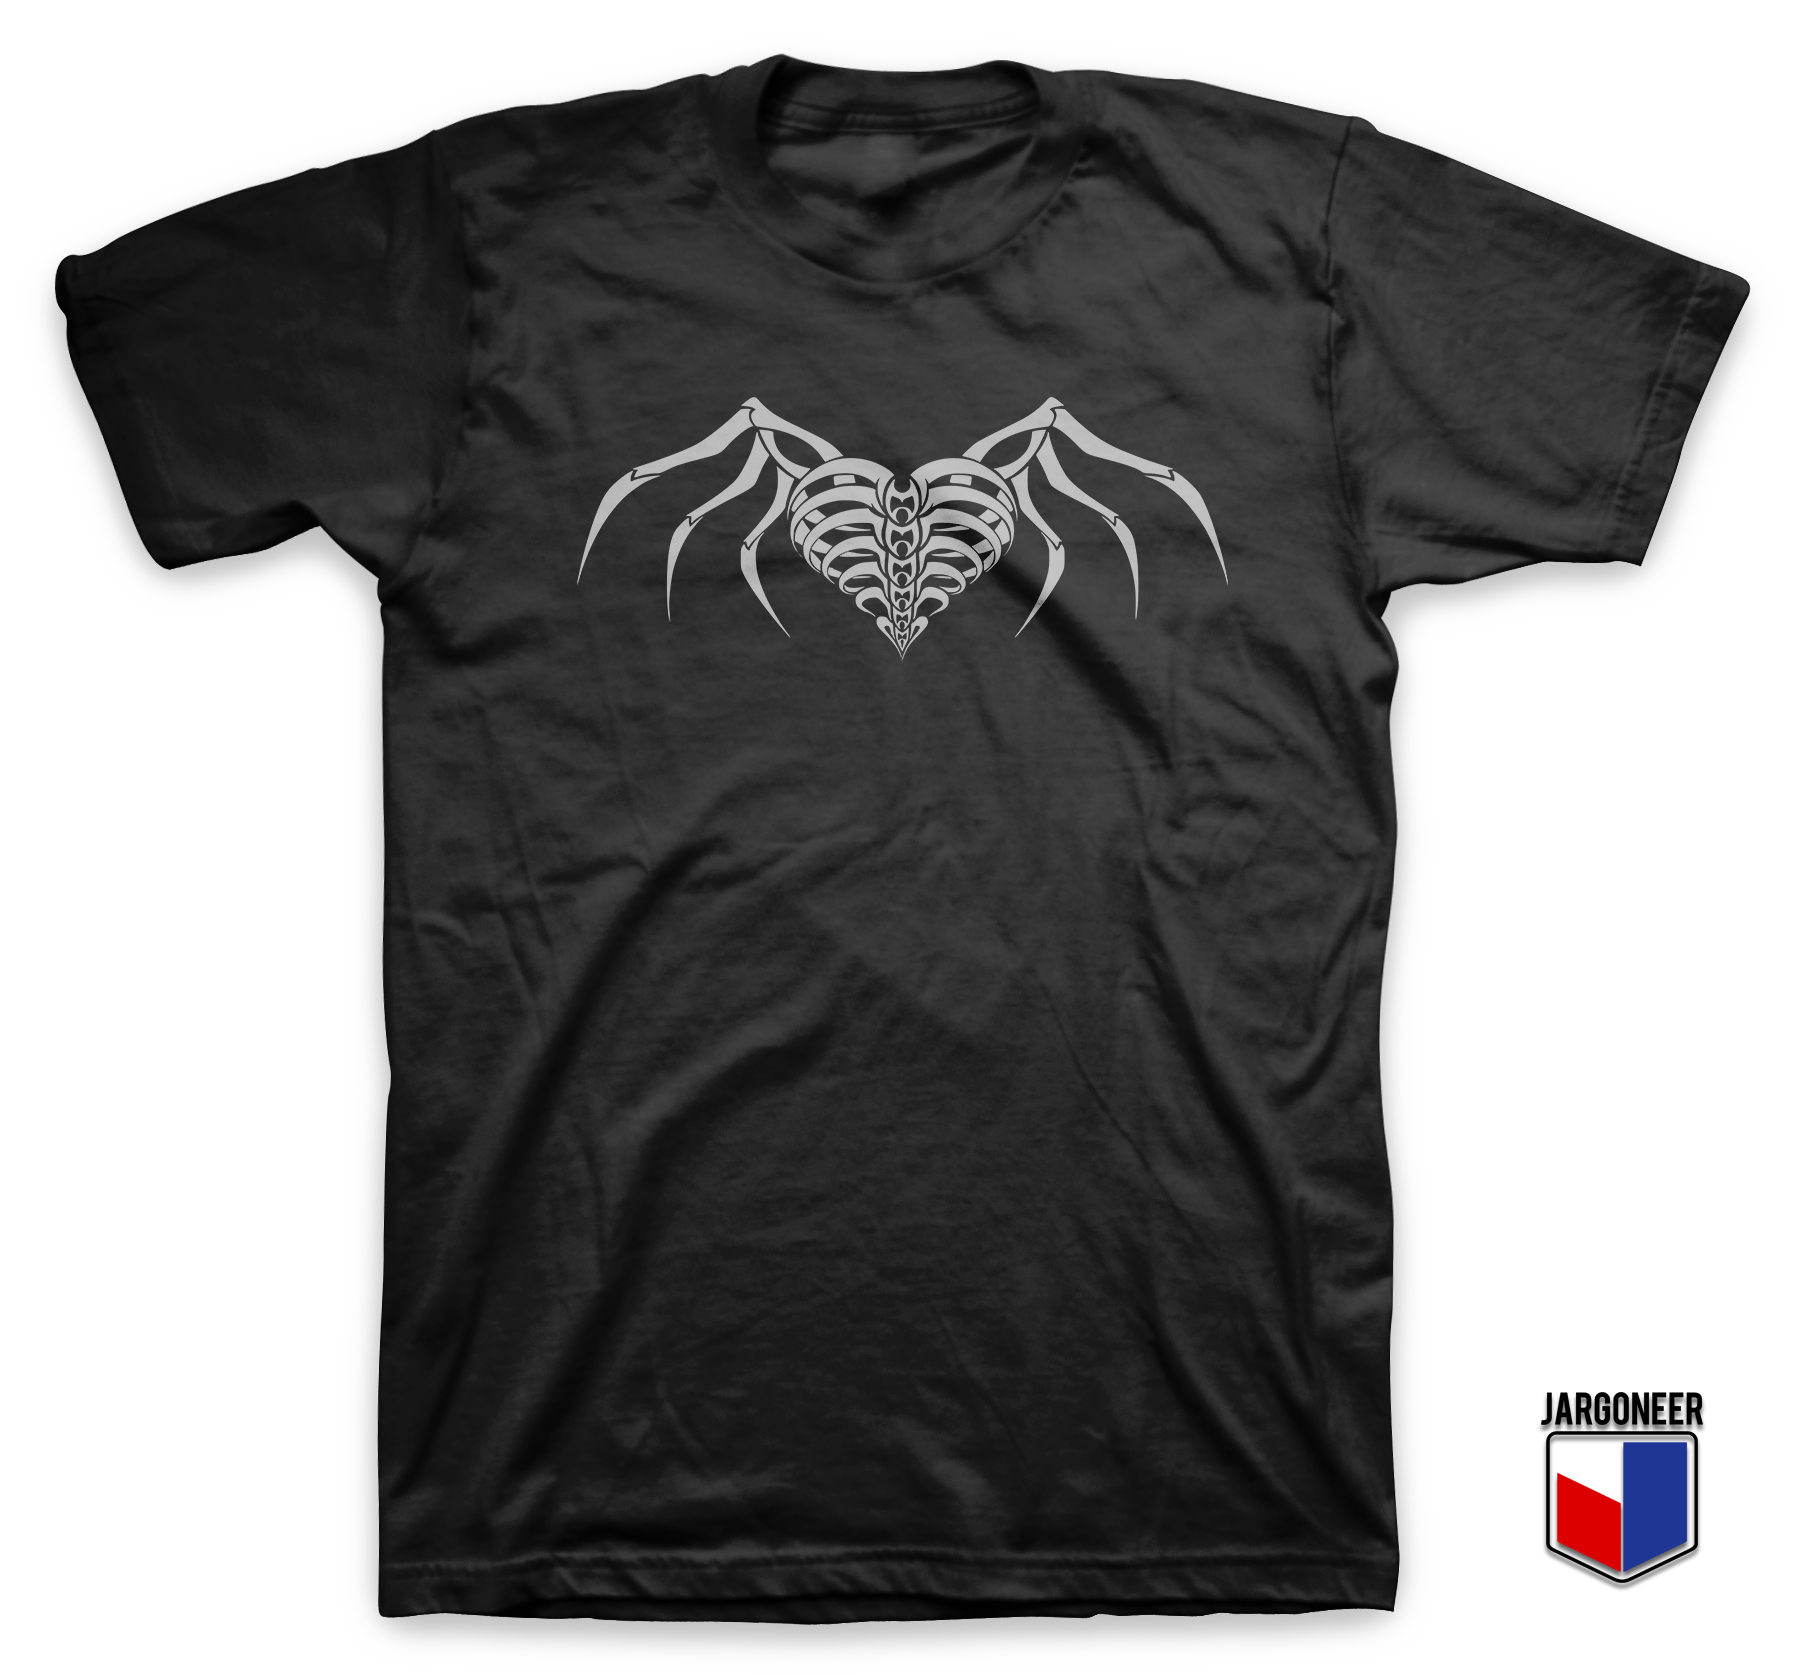 Skeleton Heart Black T Shirt - Shop Unique Graphic Cool Shirt Designs